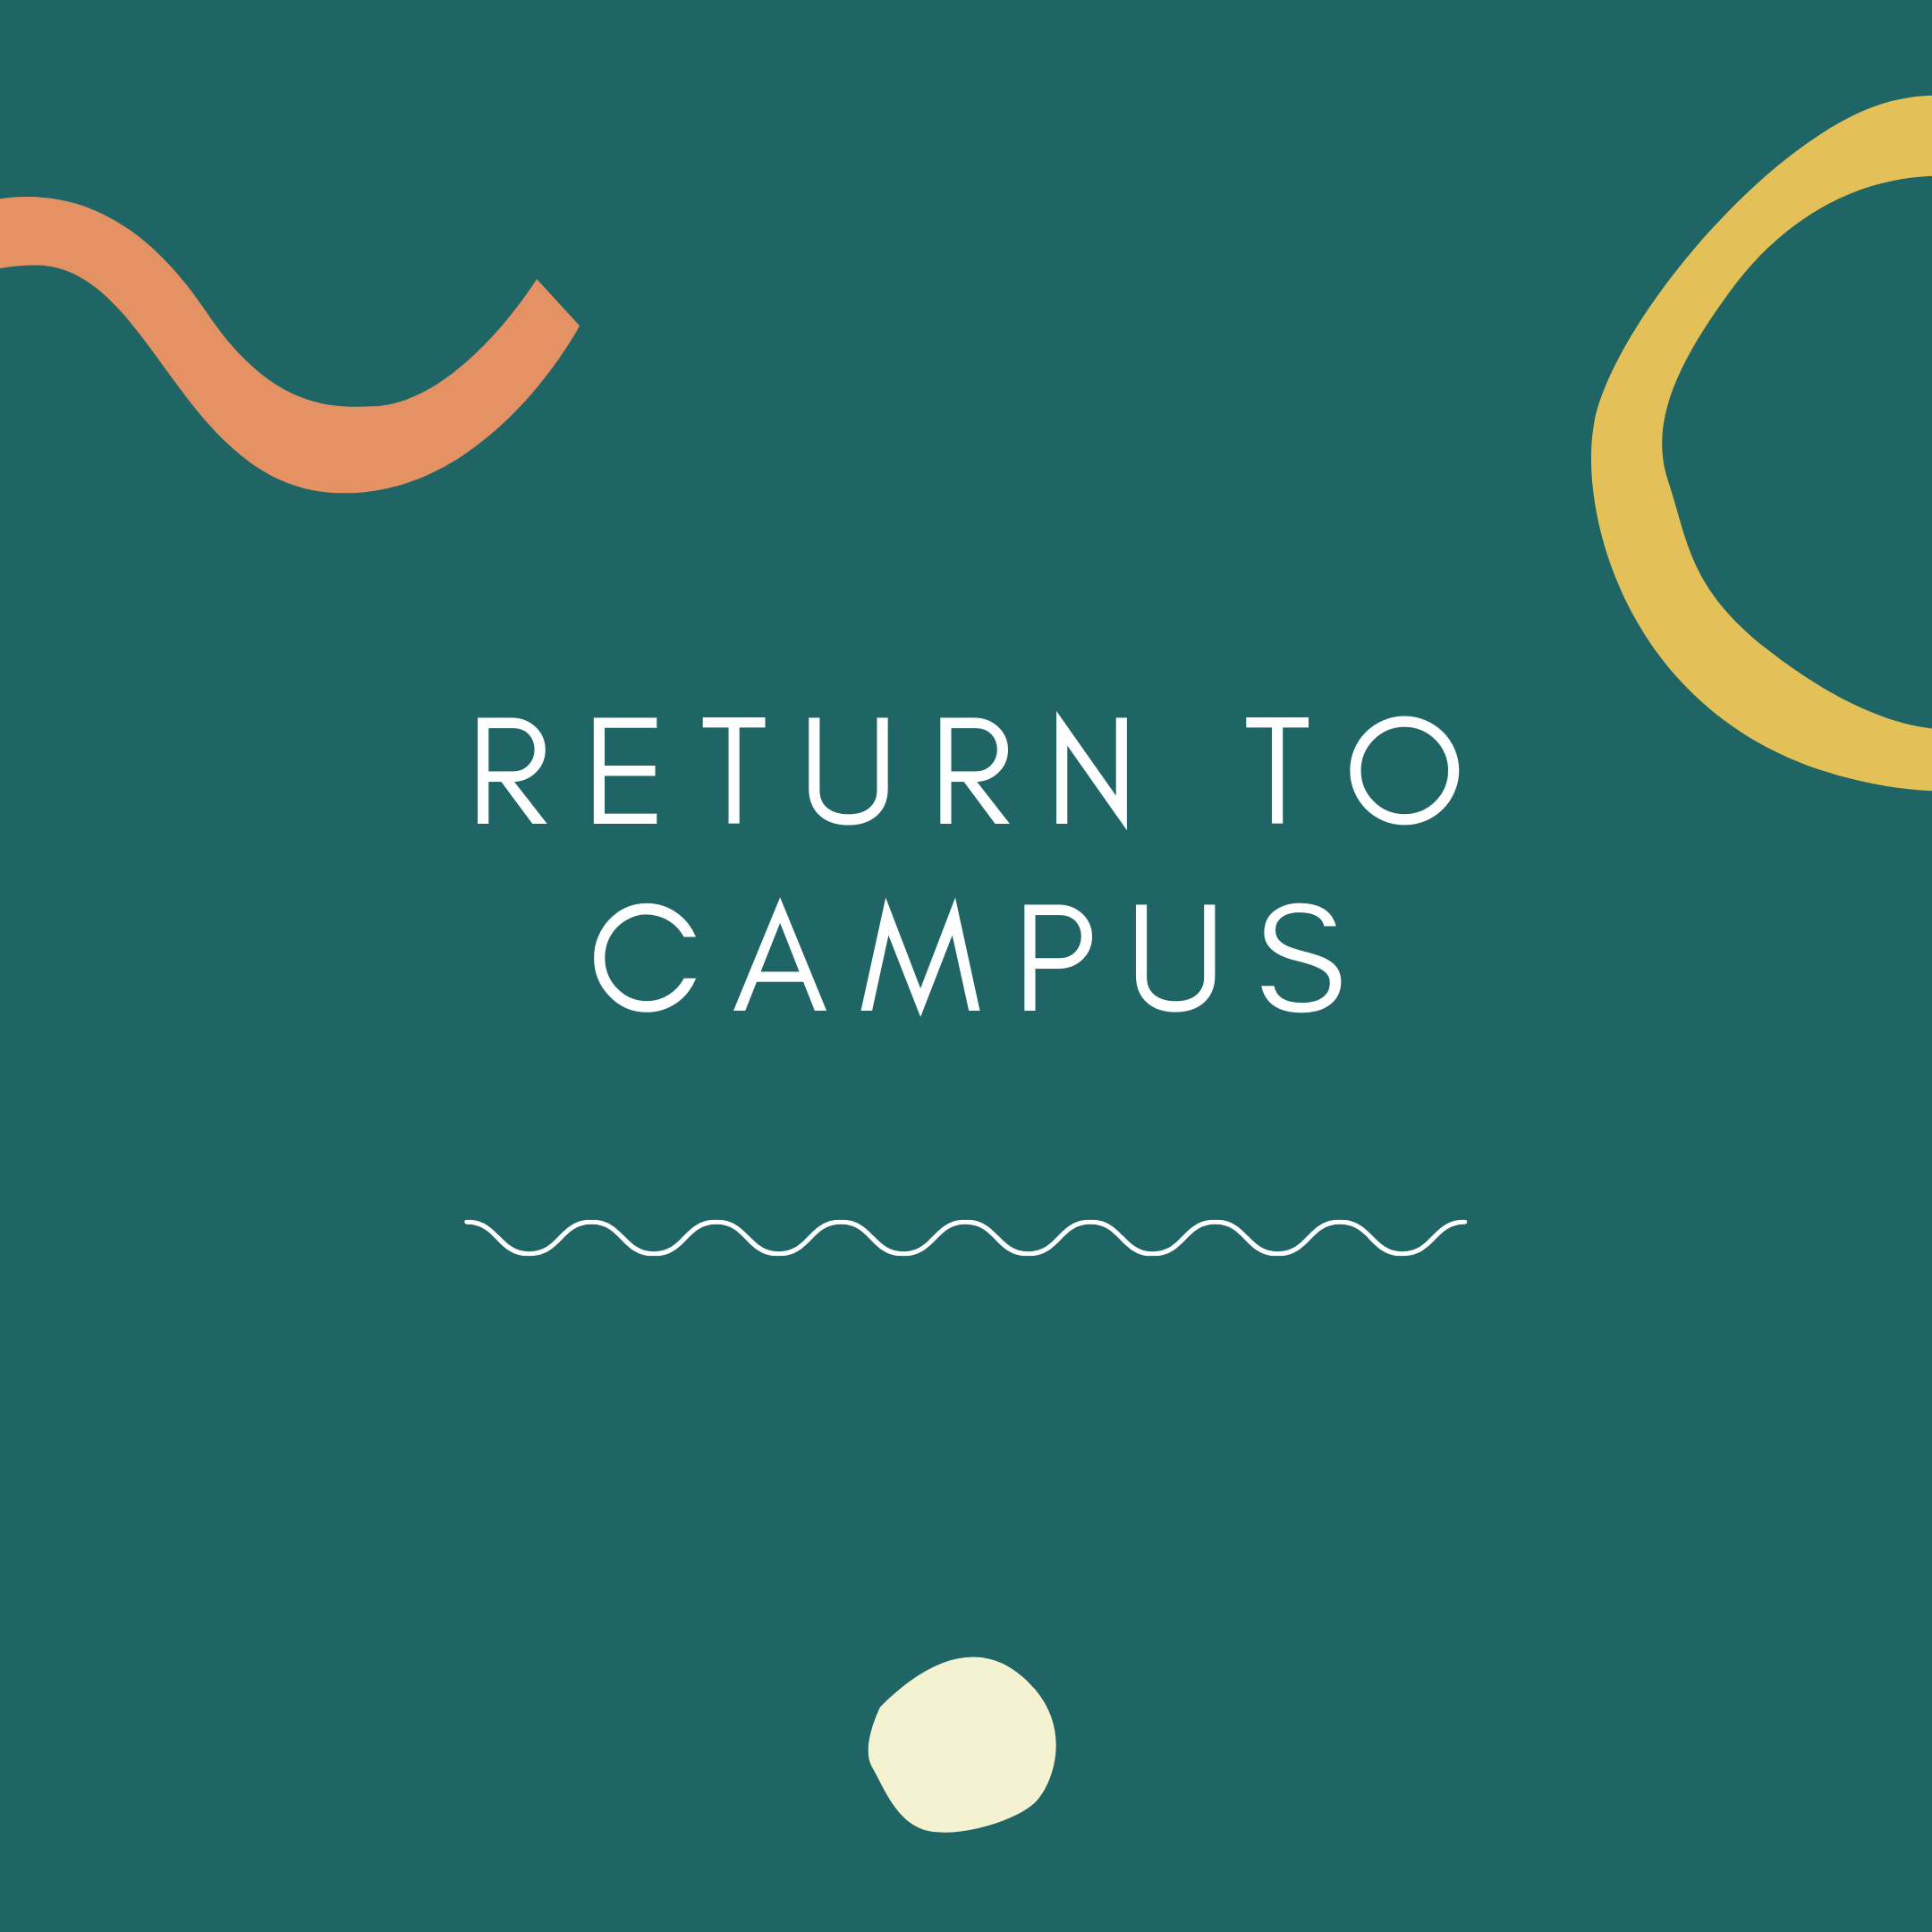 Return to Campus